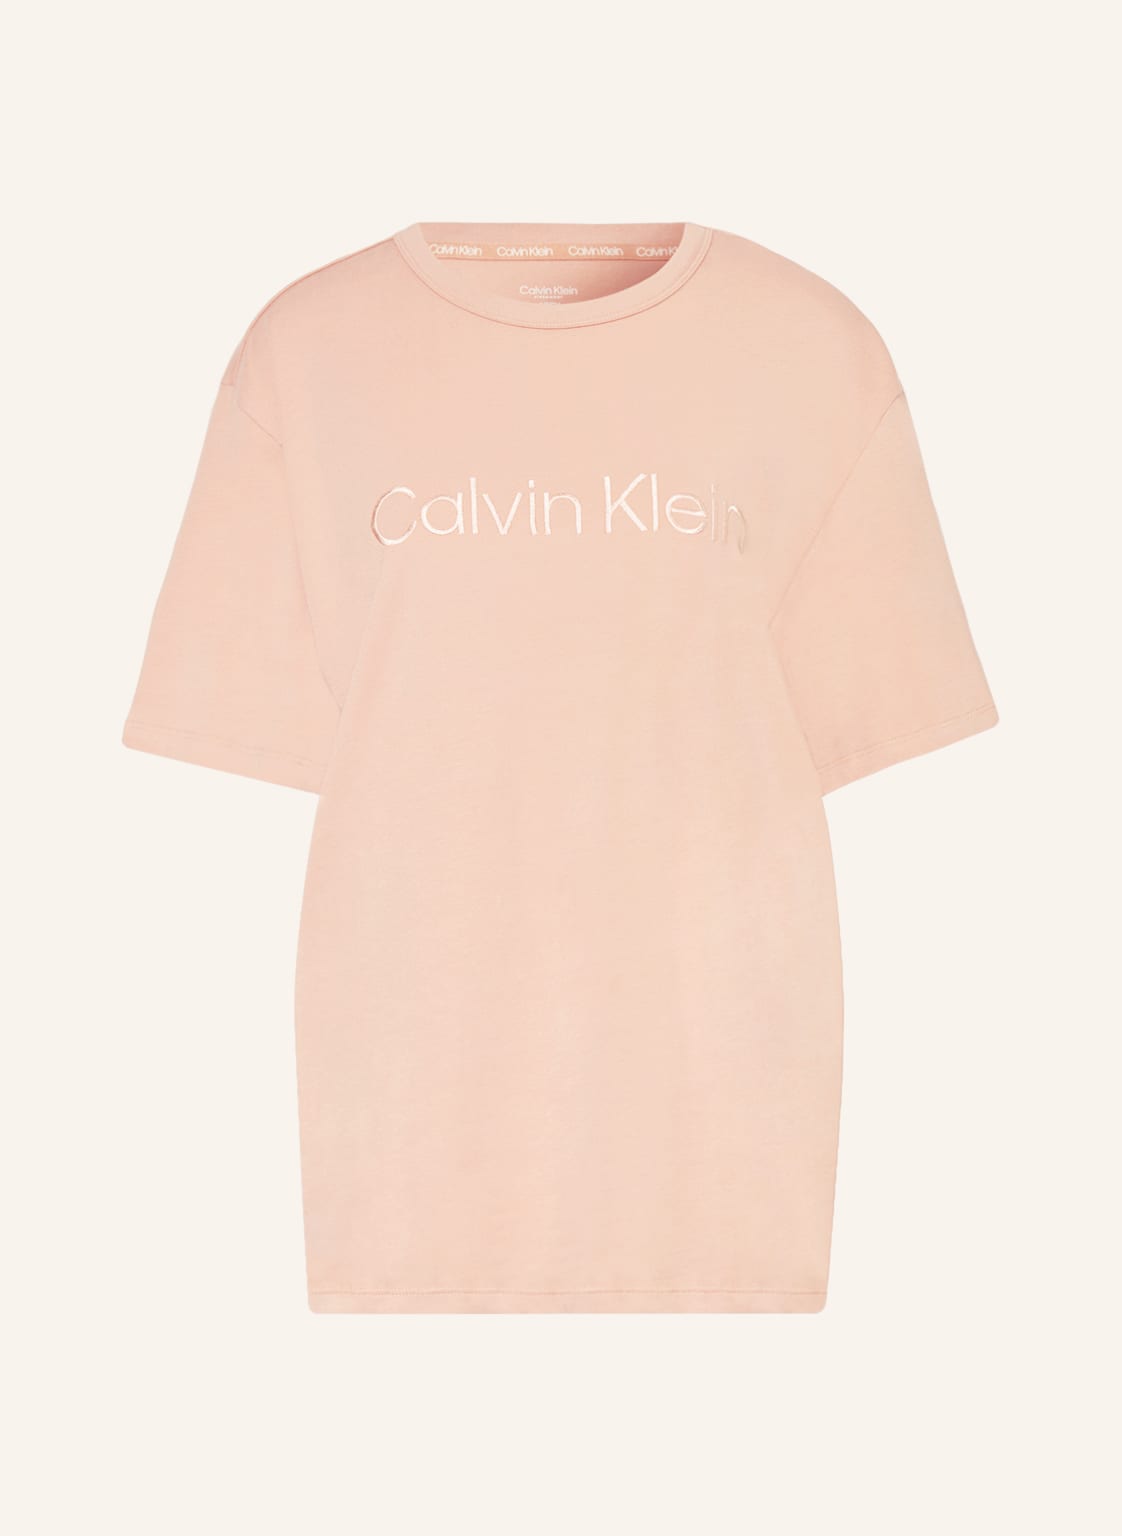 Calvin Klein Schlafshirt Pure Cotton rosa von Calvin Klein